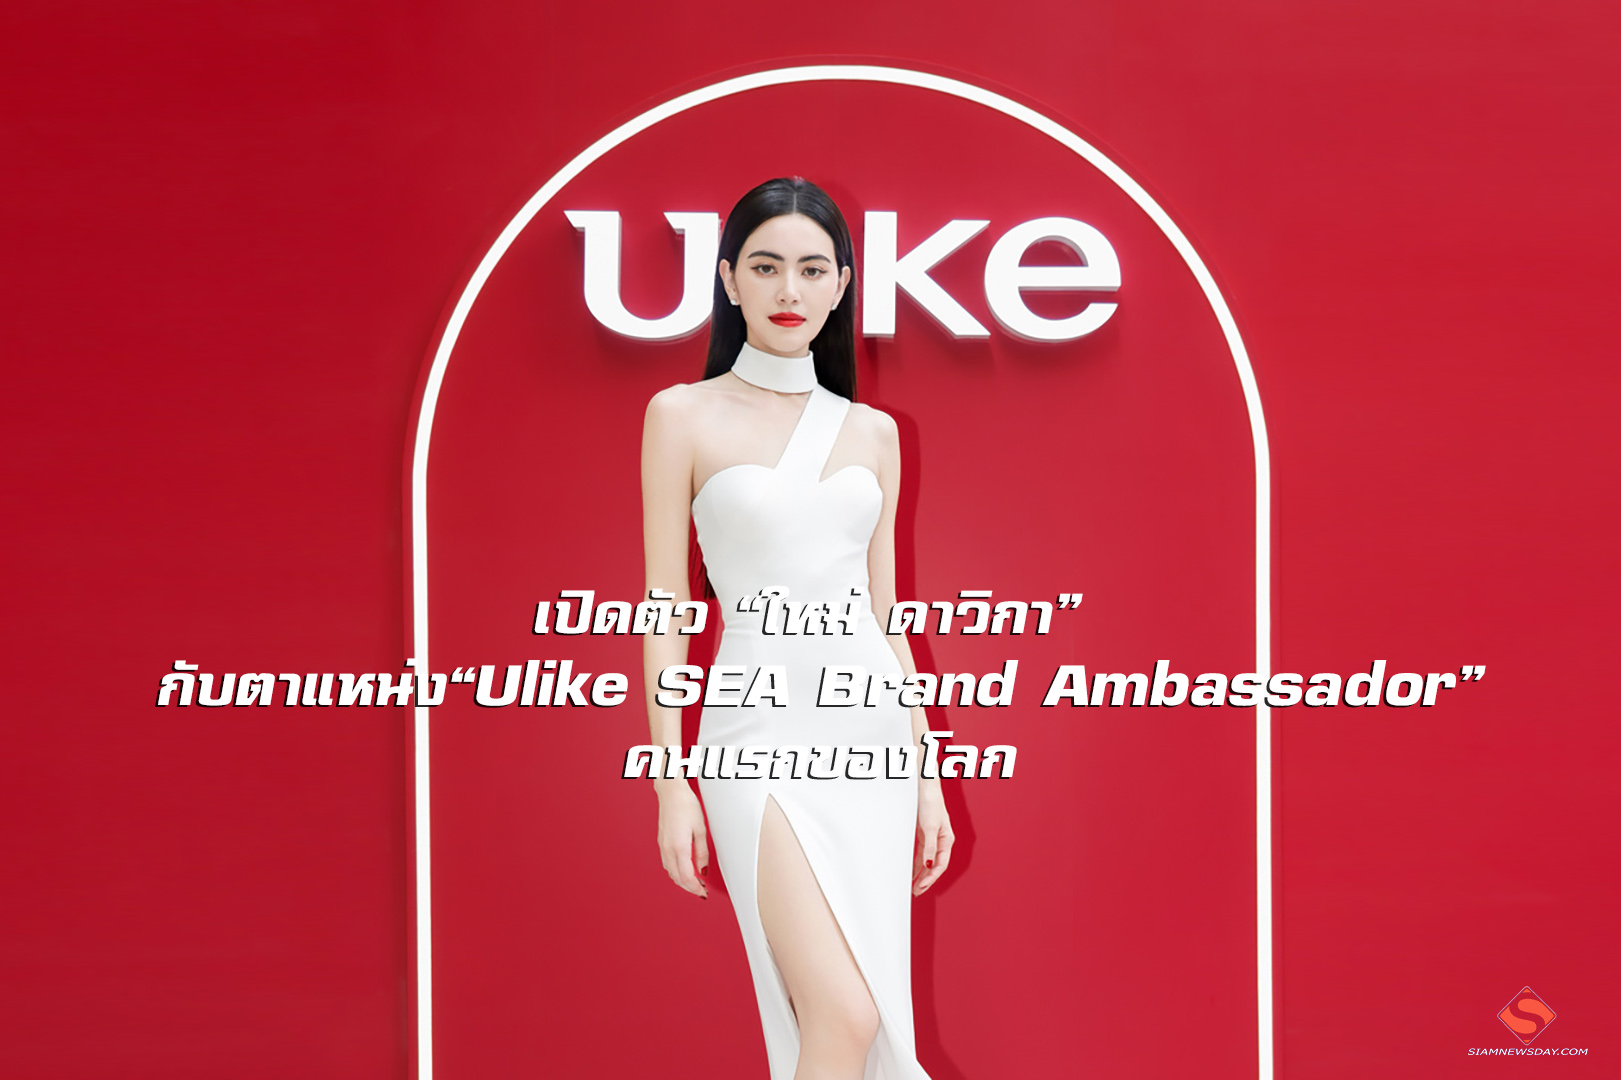 เปิดตัว “ใหม่ ดาวิกา” กับตำแหน่ง“Ulike SEA Brand Ambassador” คนแรกของโลก